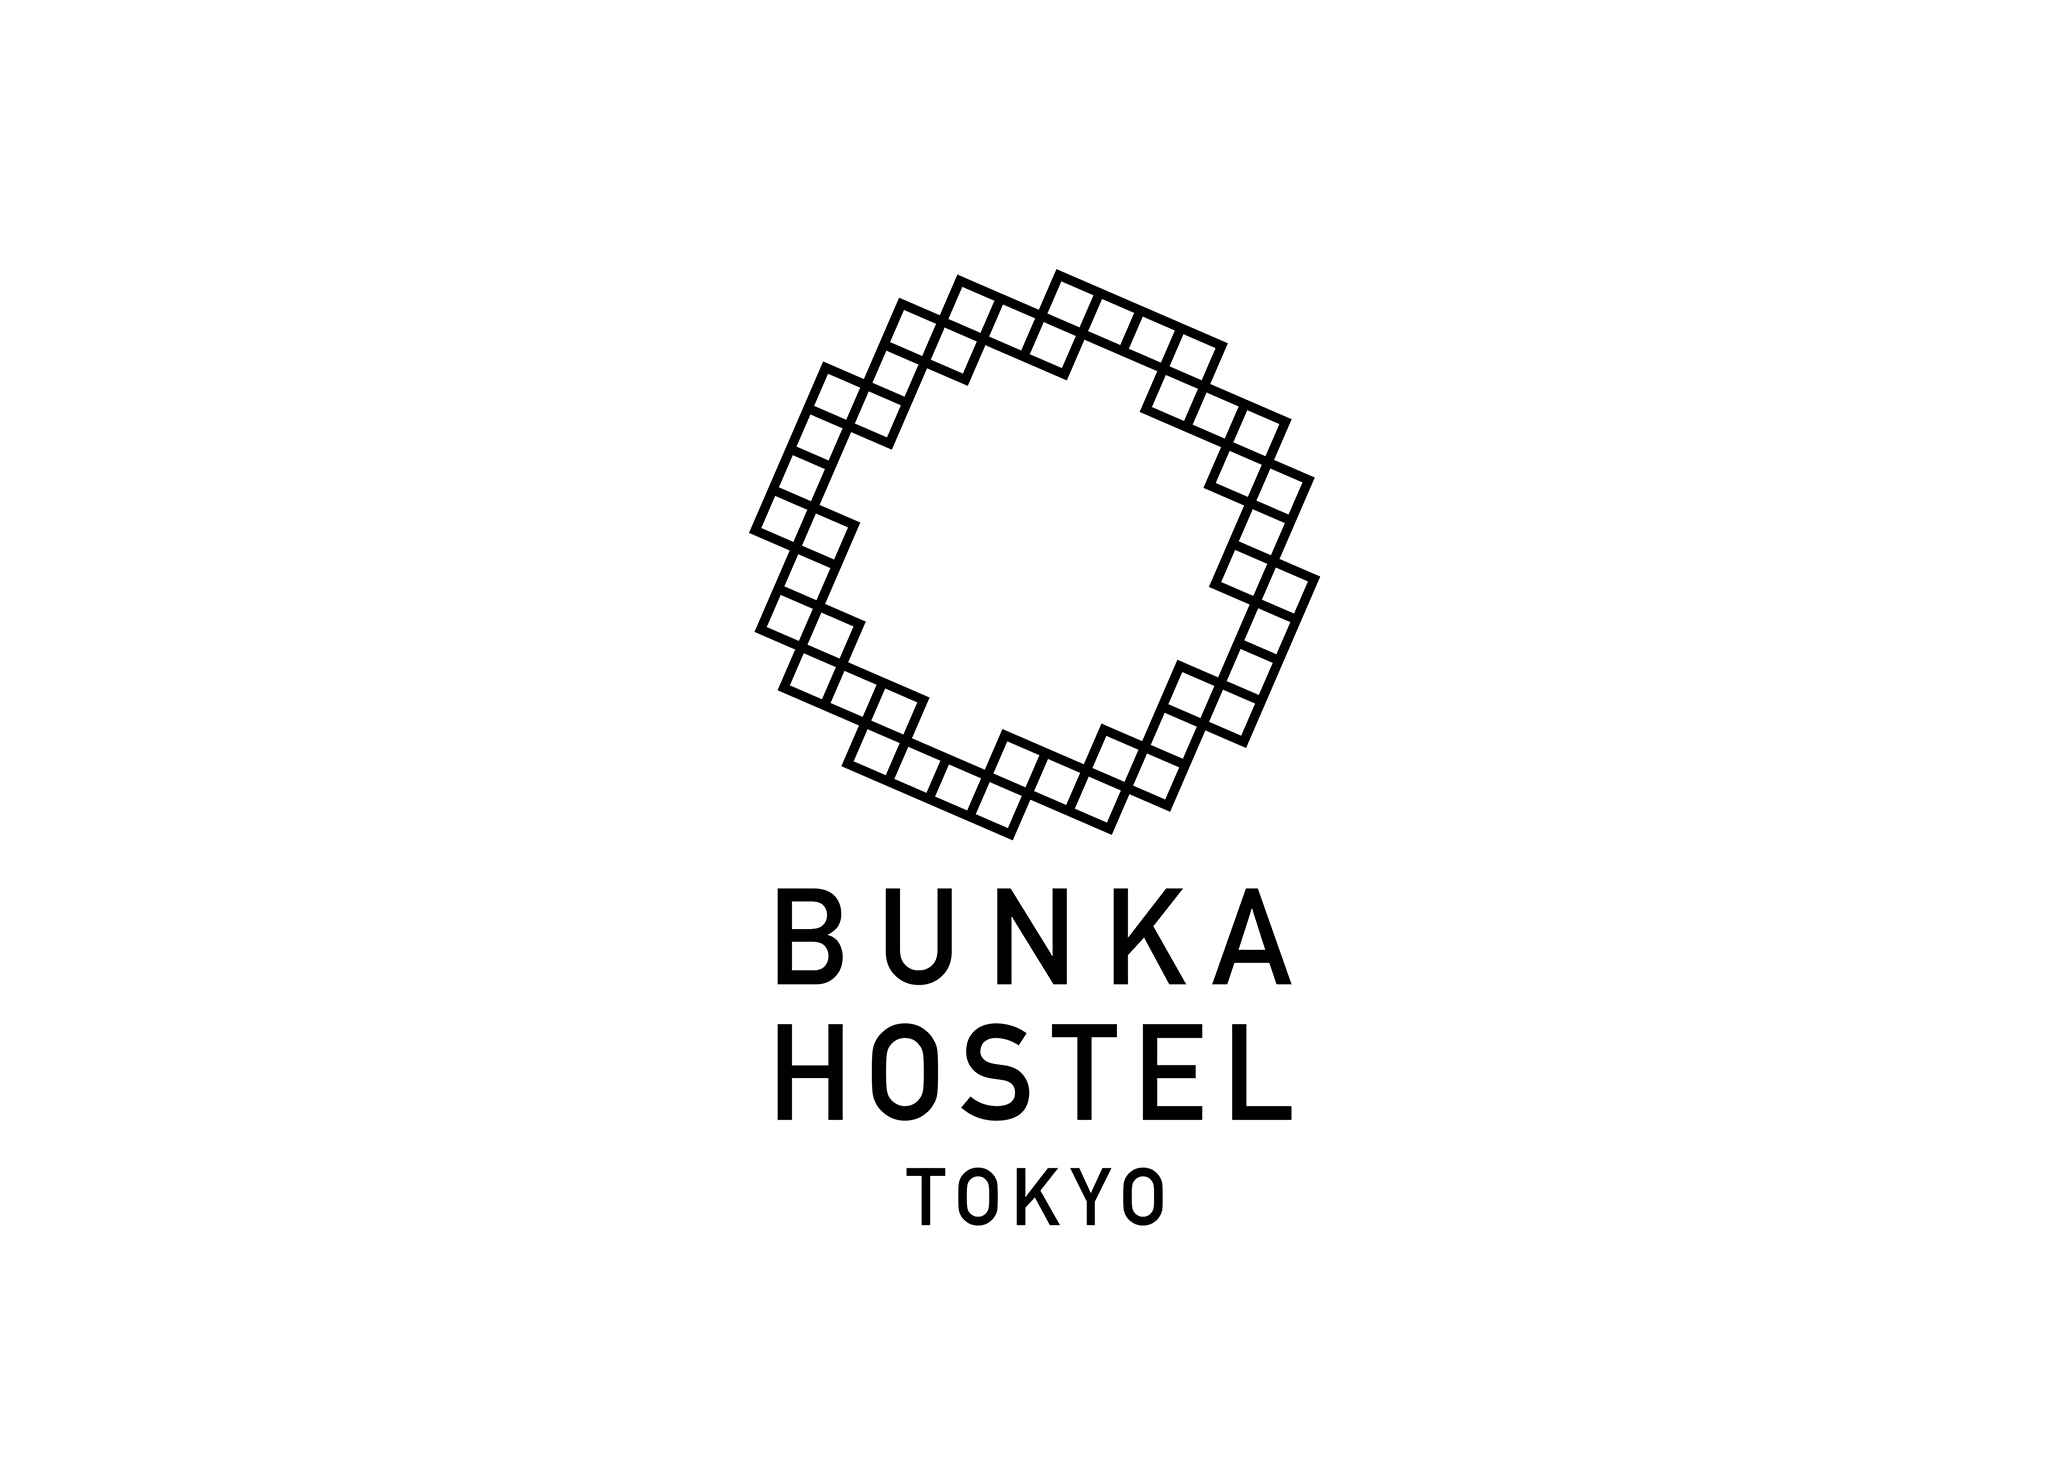 Bunka Hostel Tokyo / 2015